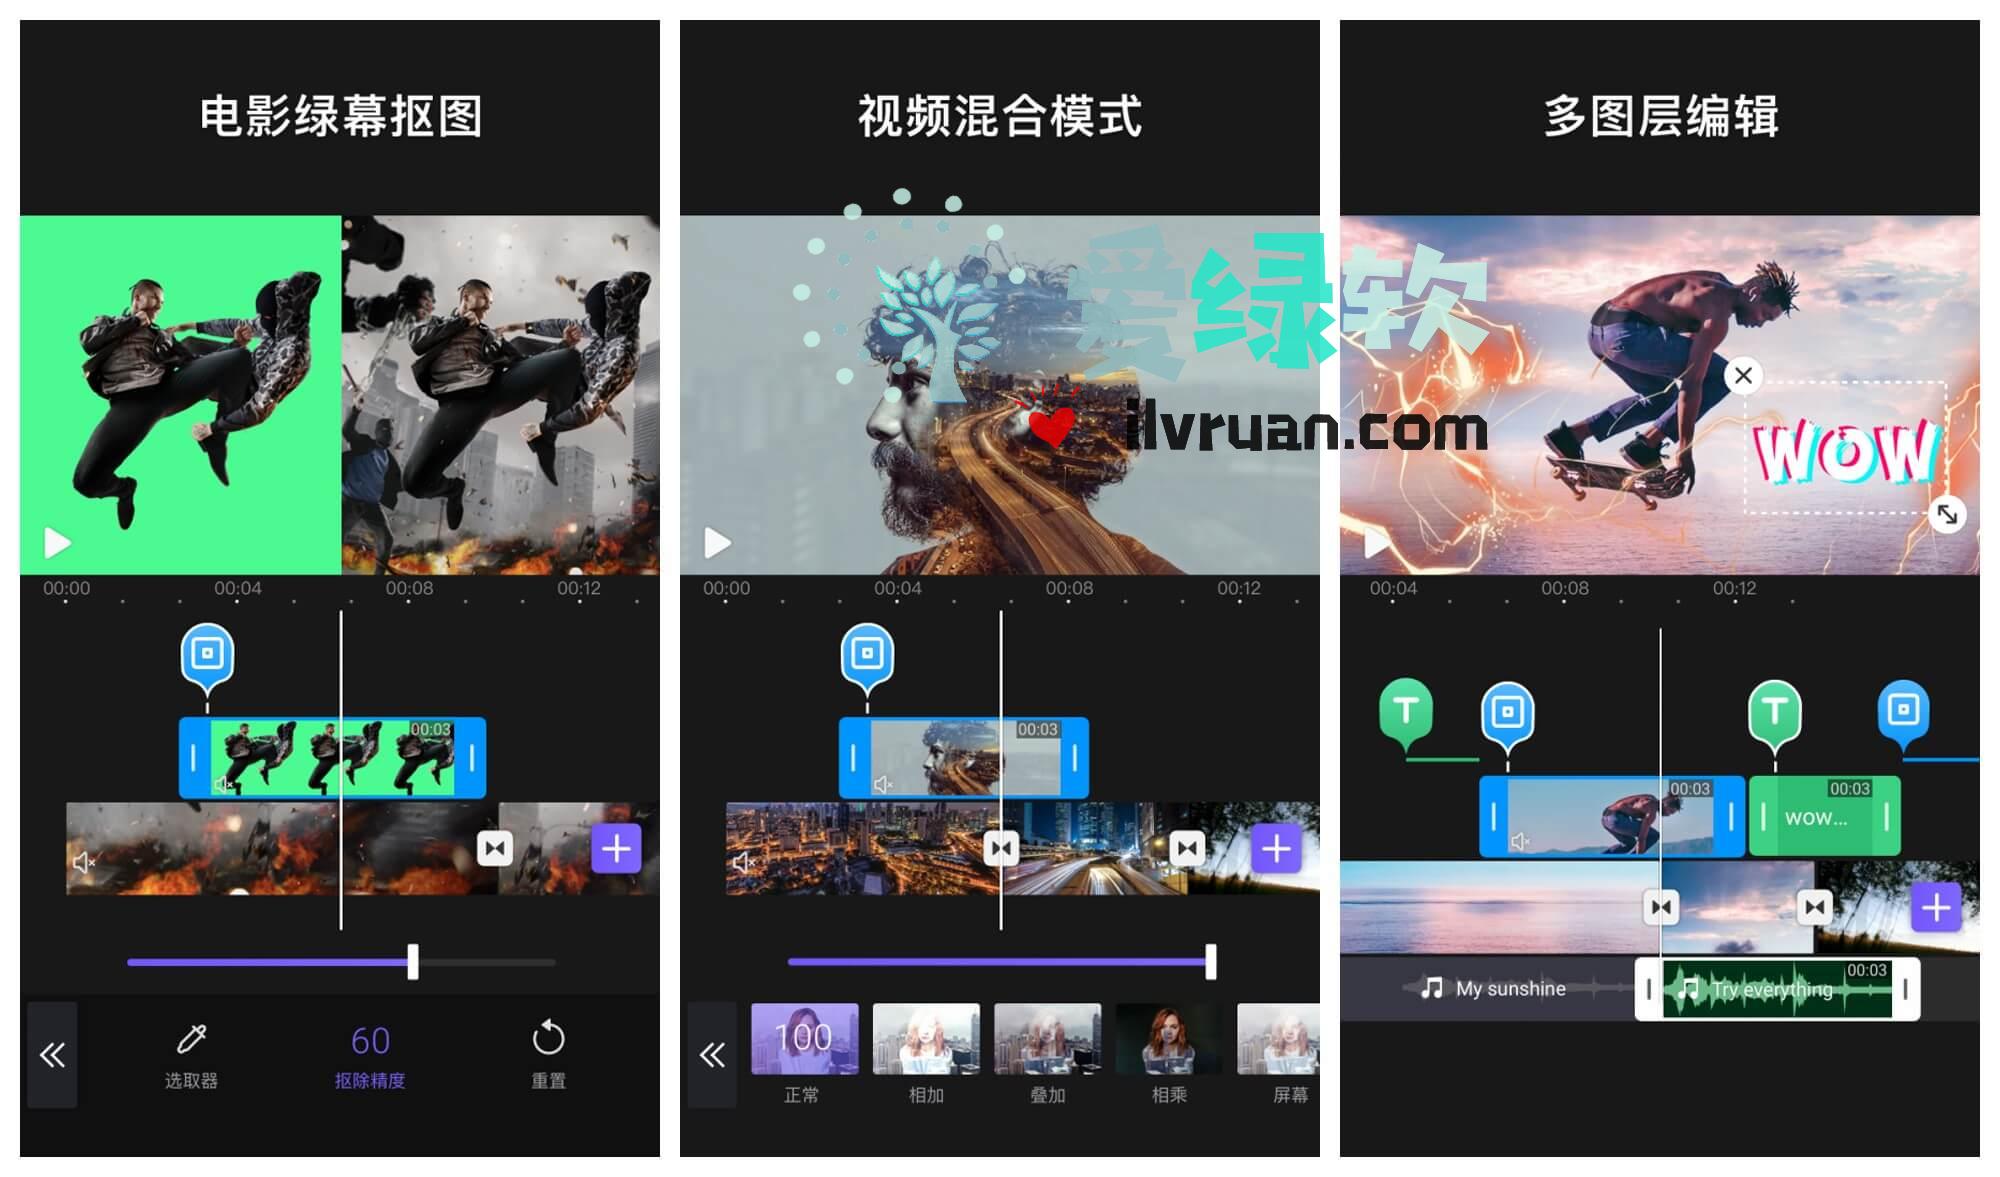 安卓 专业视频编辑器 Videoleap v1.0.6 付费专业特别版  